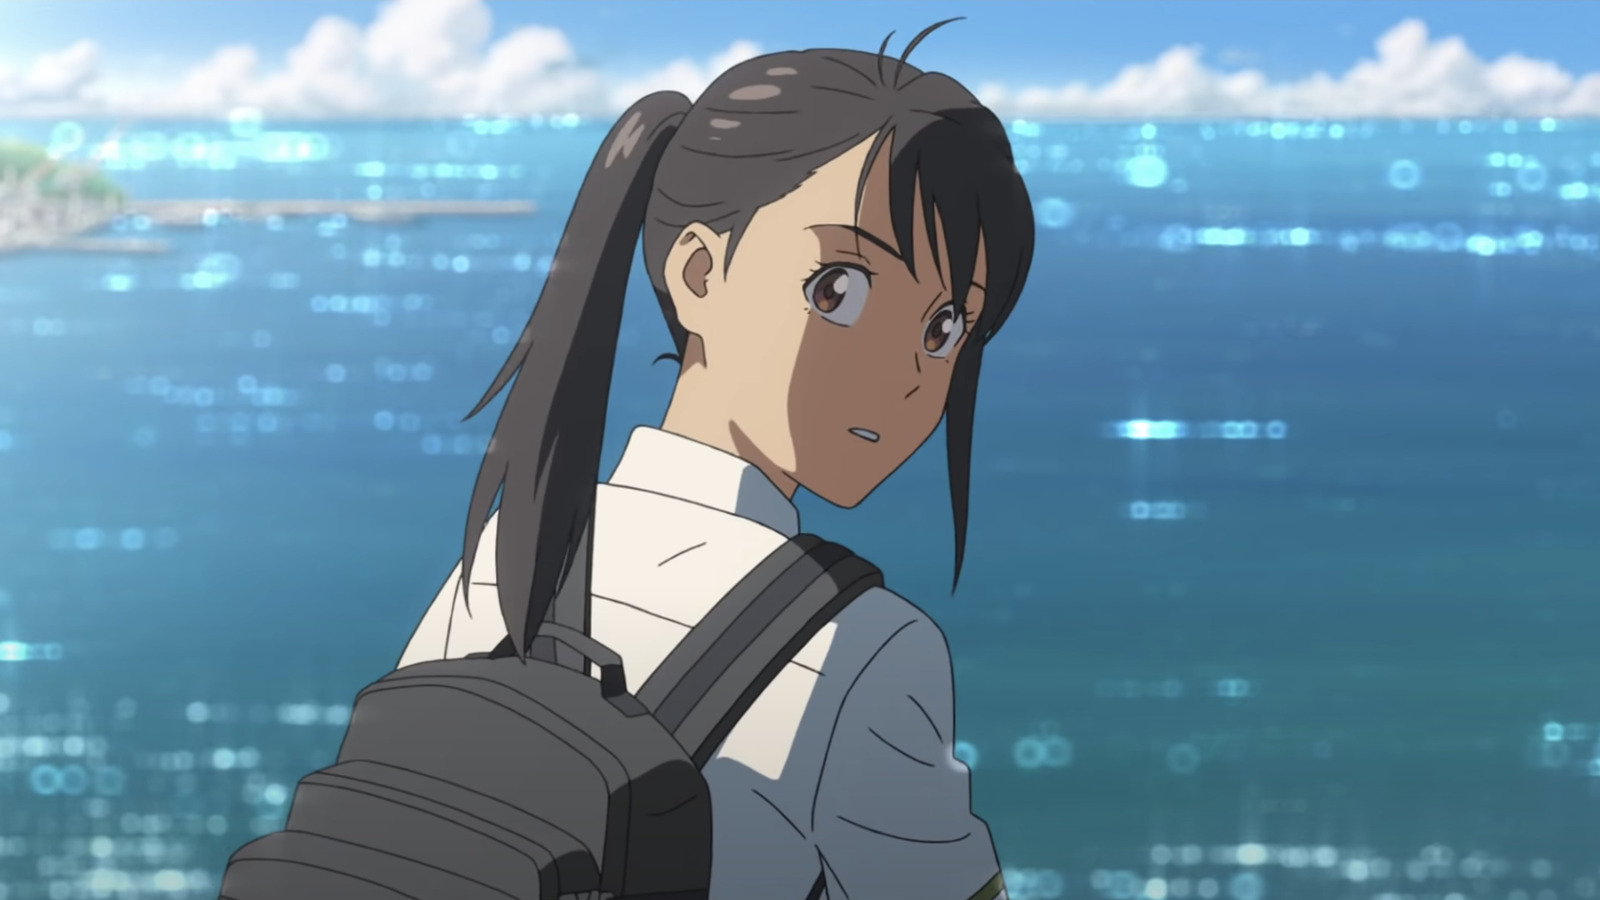 Suzume No Tojimari Trailer: Your Name Director Makoto Shinkai Returns With A Story About Closure